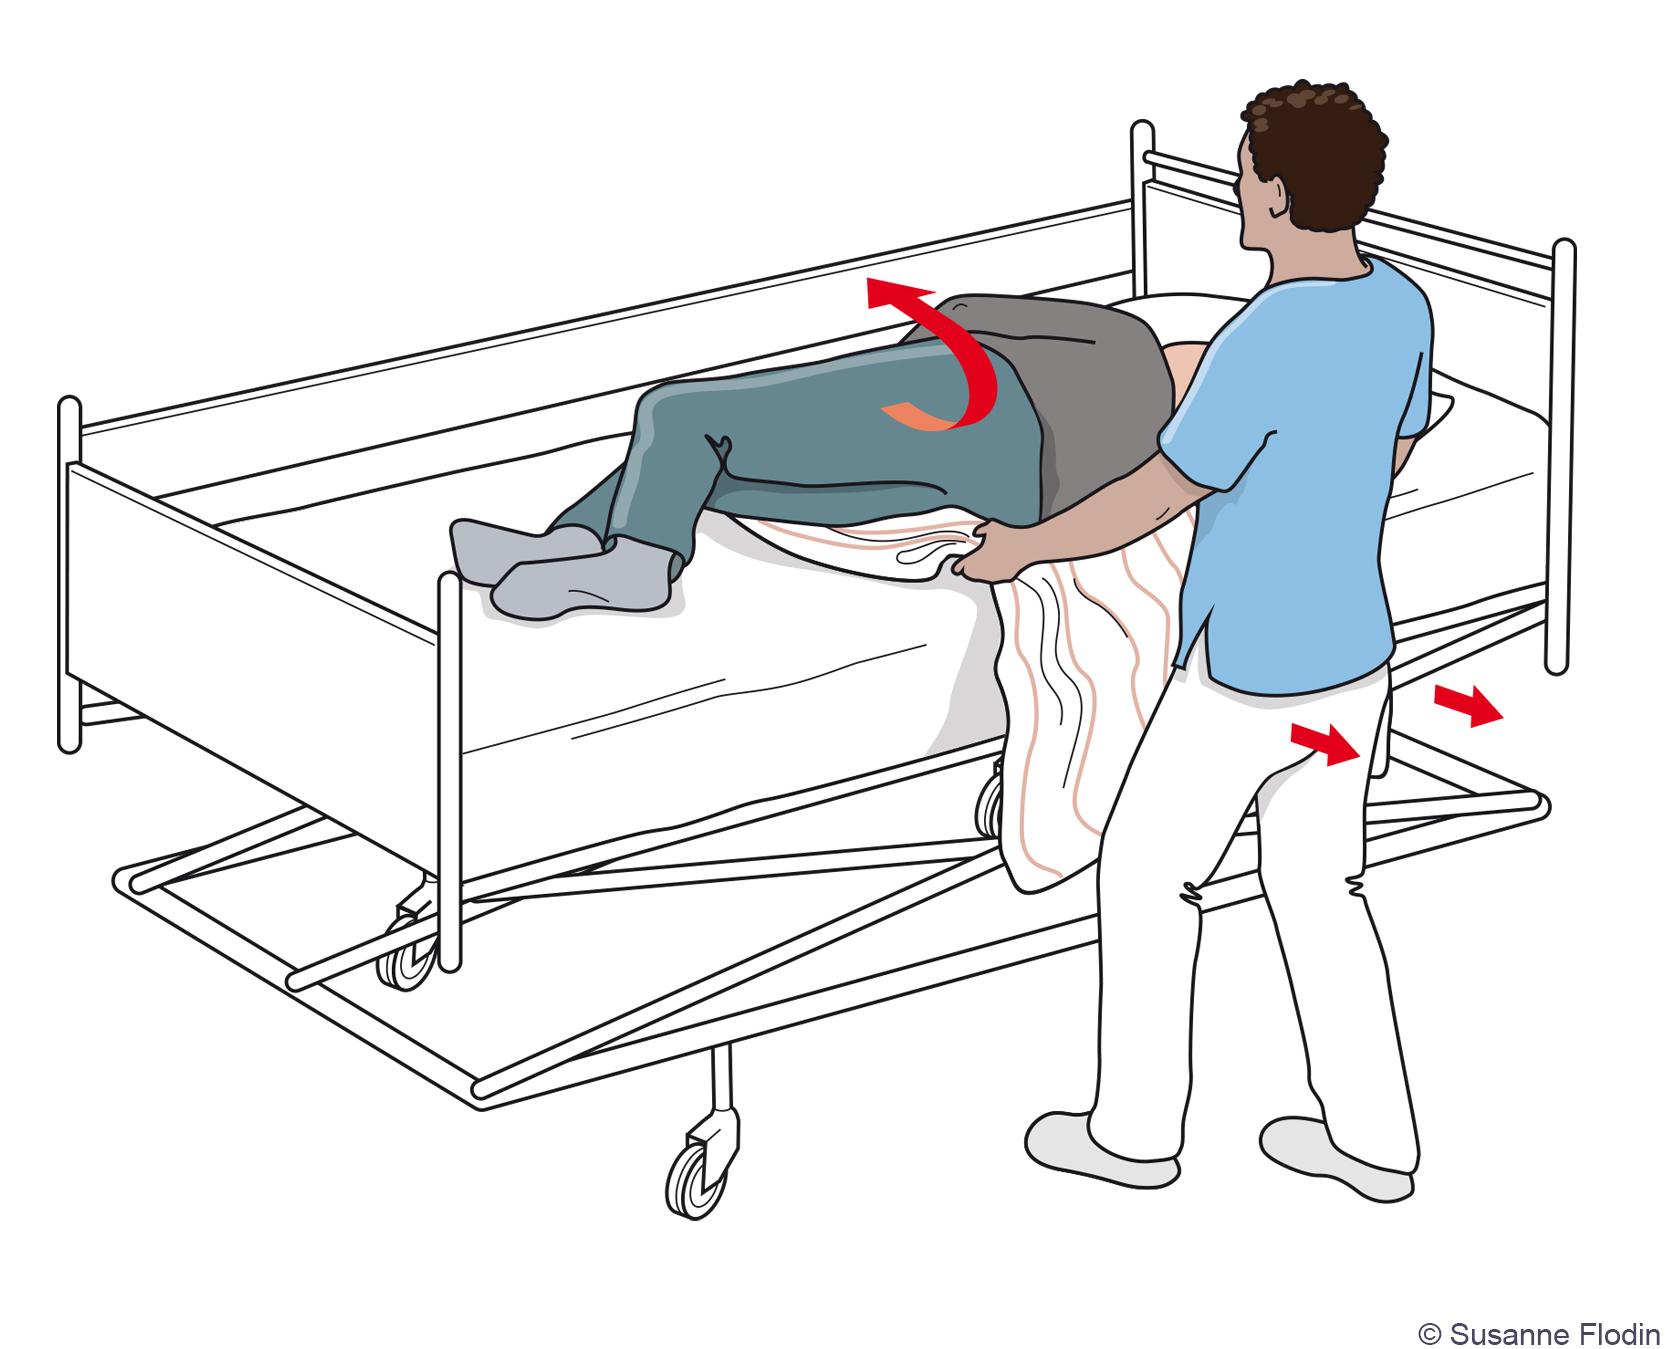 Bild som beskriver hur en vårdpersonal hjälper en patient att vända sig i sängen med hjälp av draglakan. 